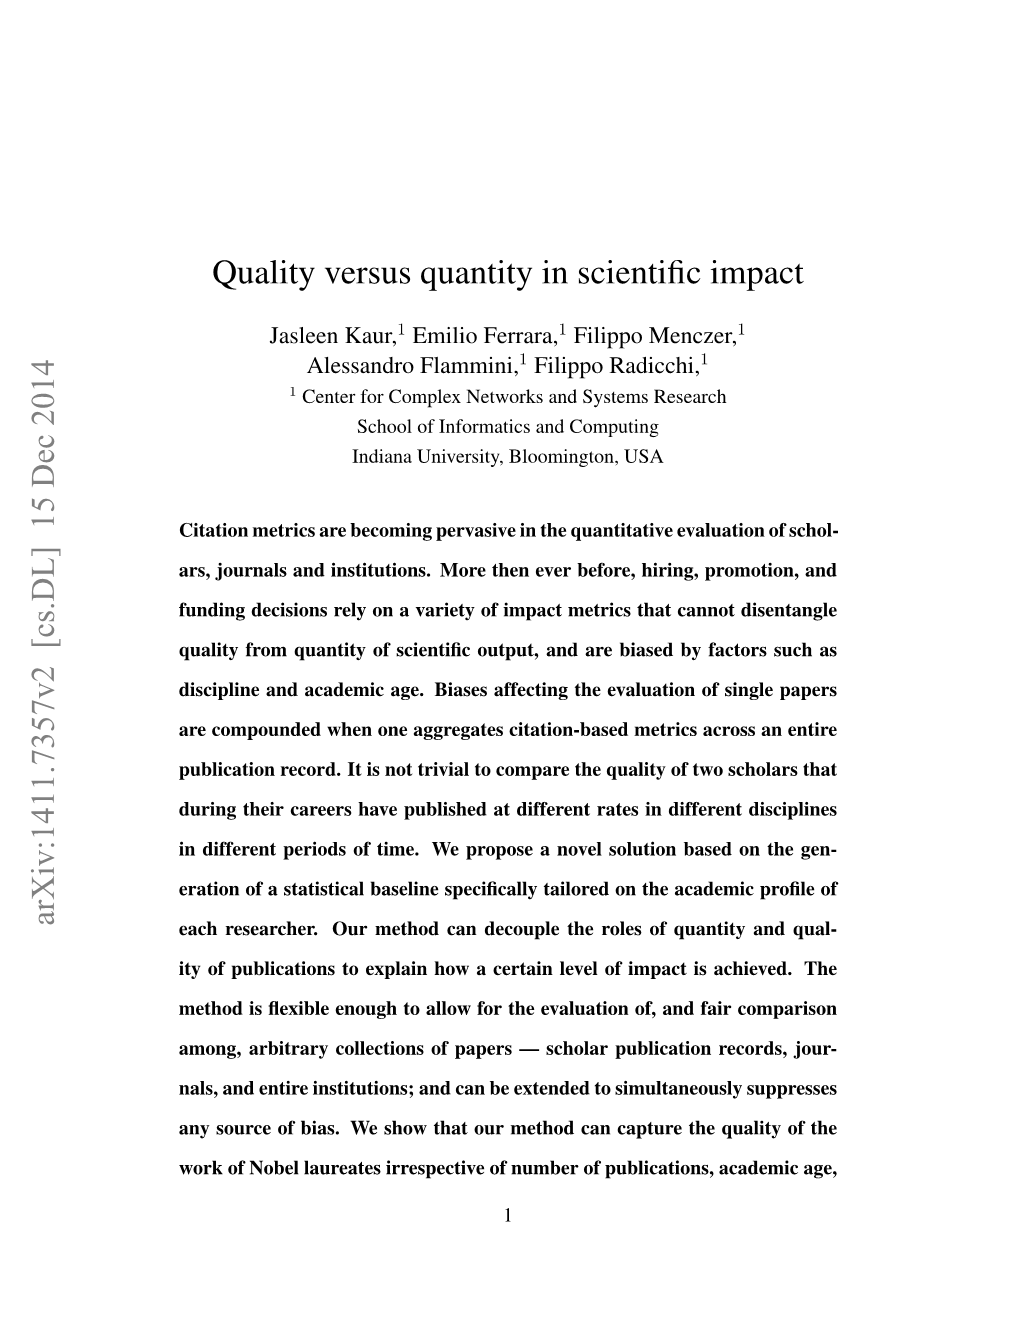 Quality Versus Quantity in Scientific Impact Arxiv